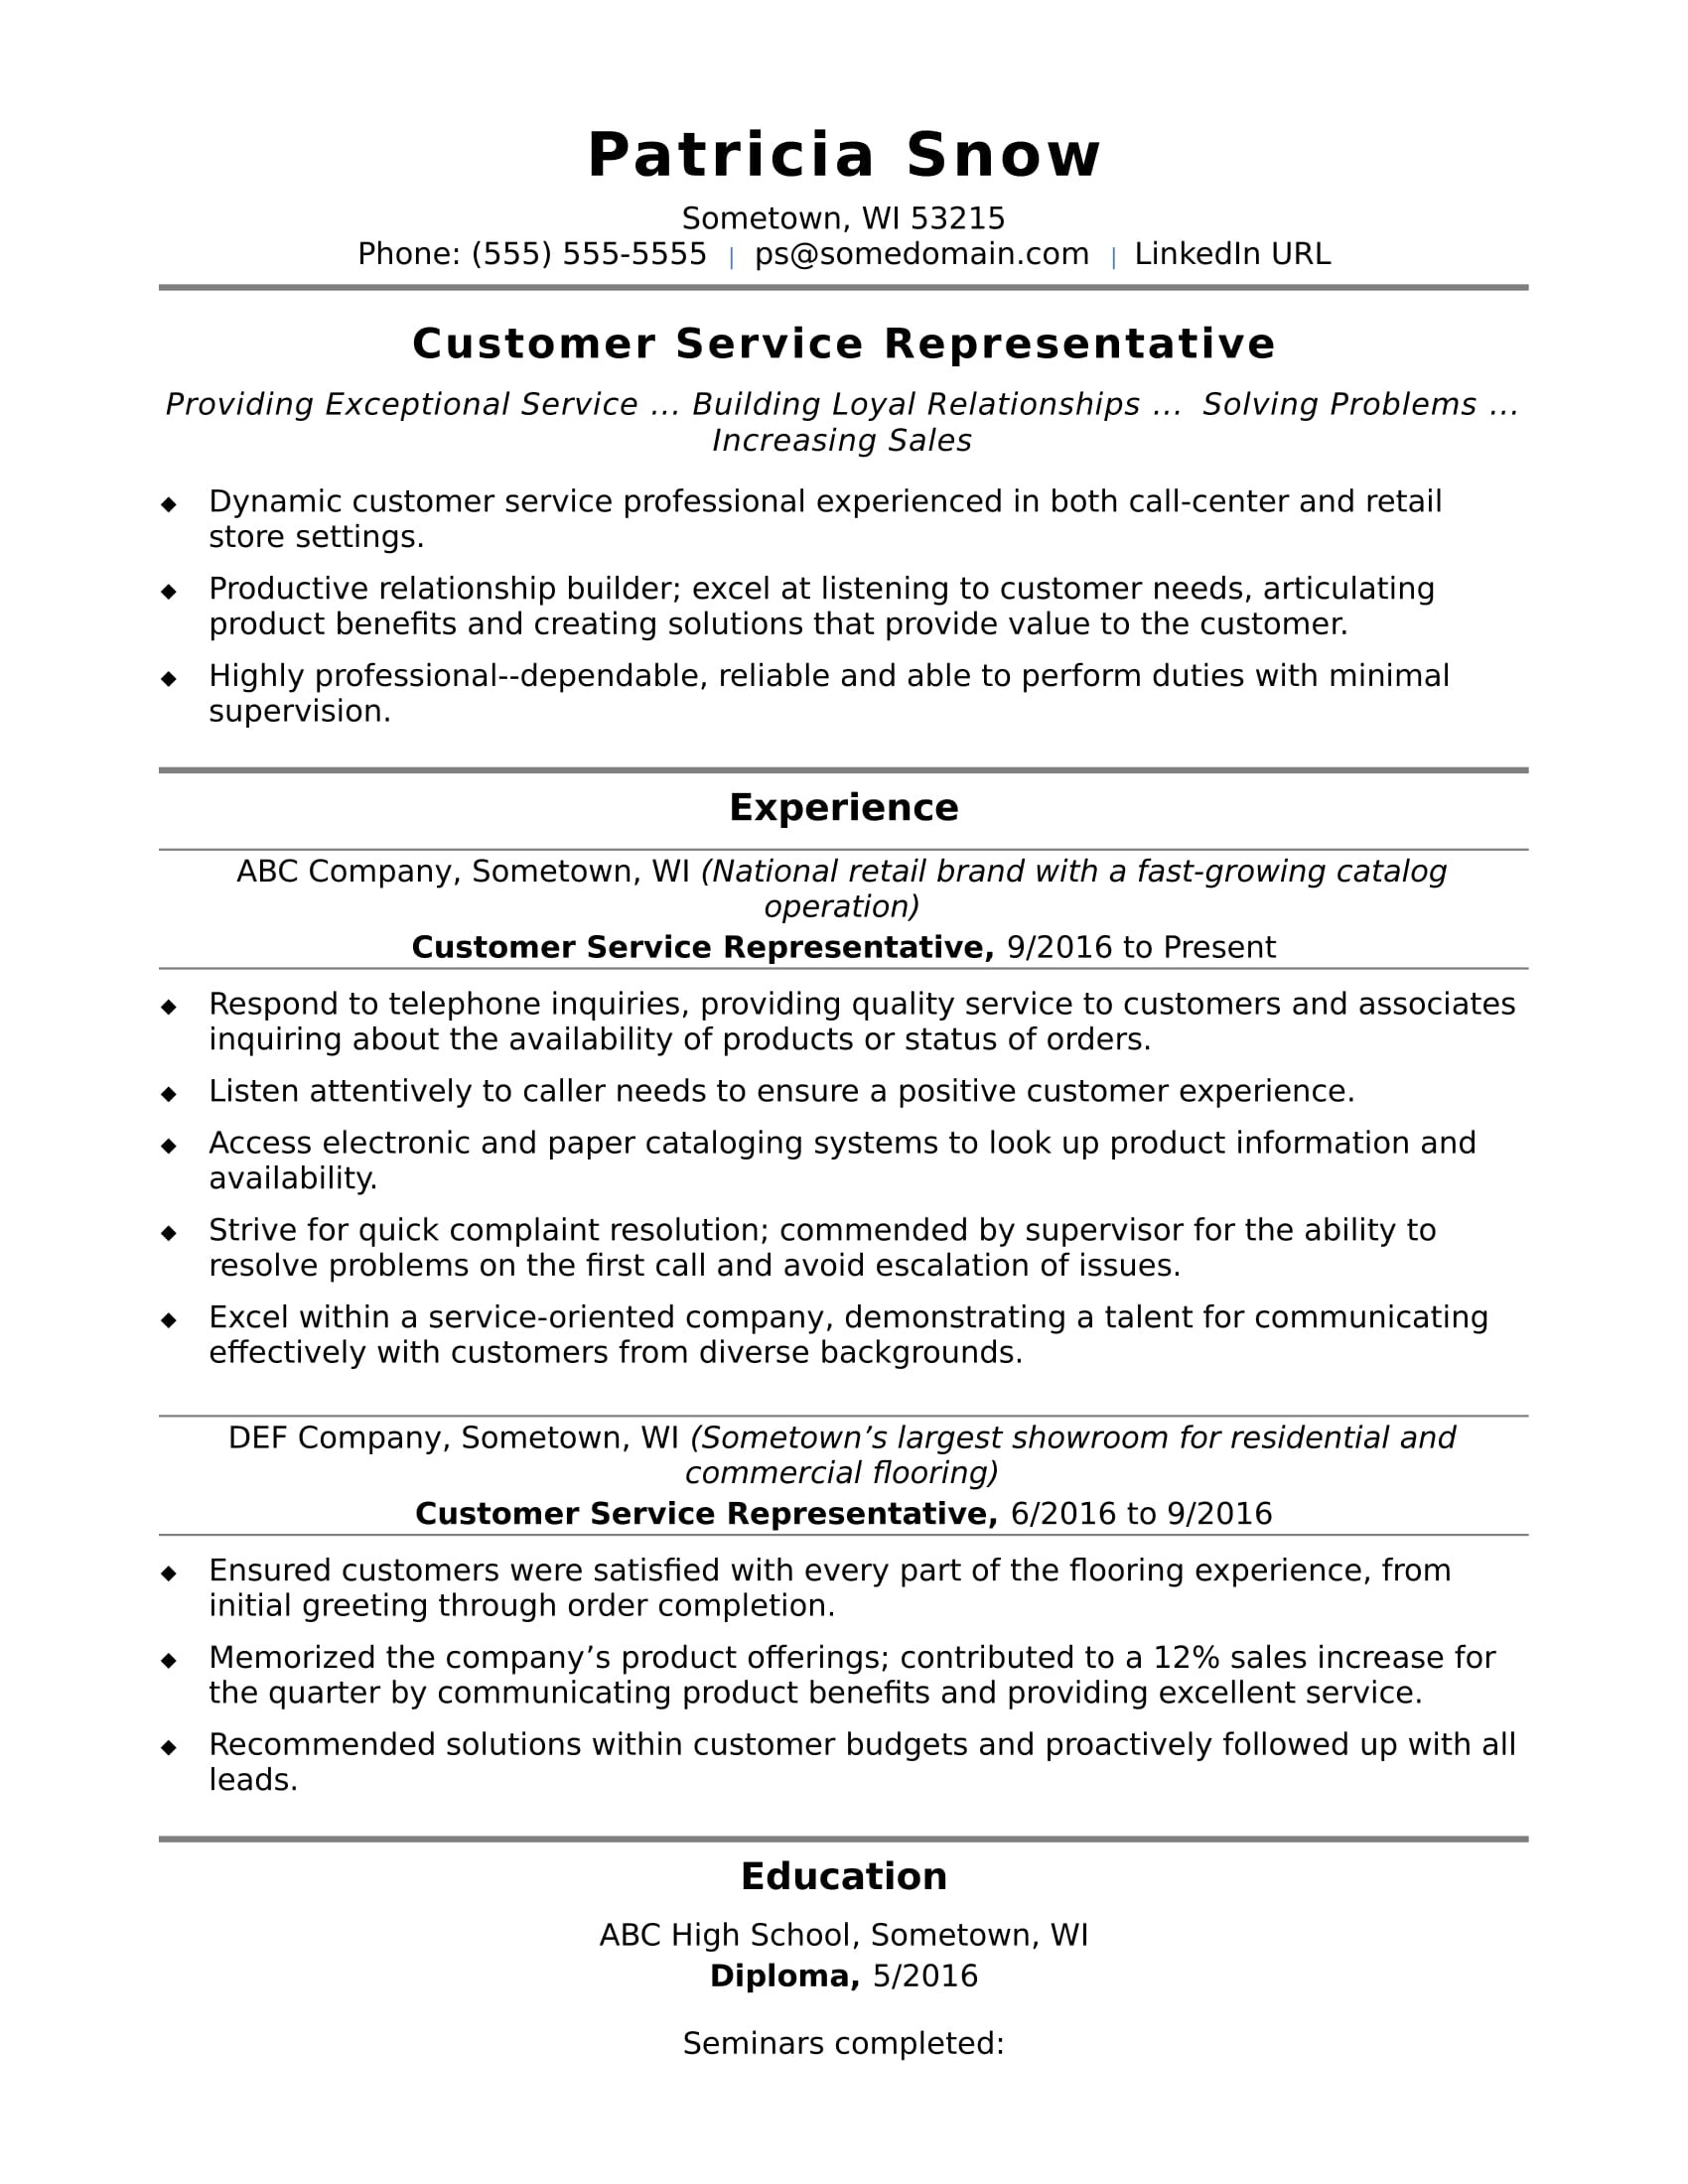 Sample Resume for Customer Service Representative with Experience Customer Service Representative Resume Sample Monster.com